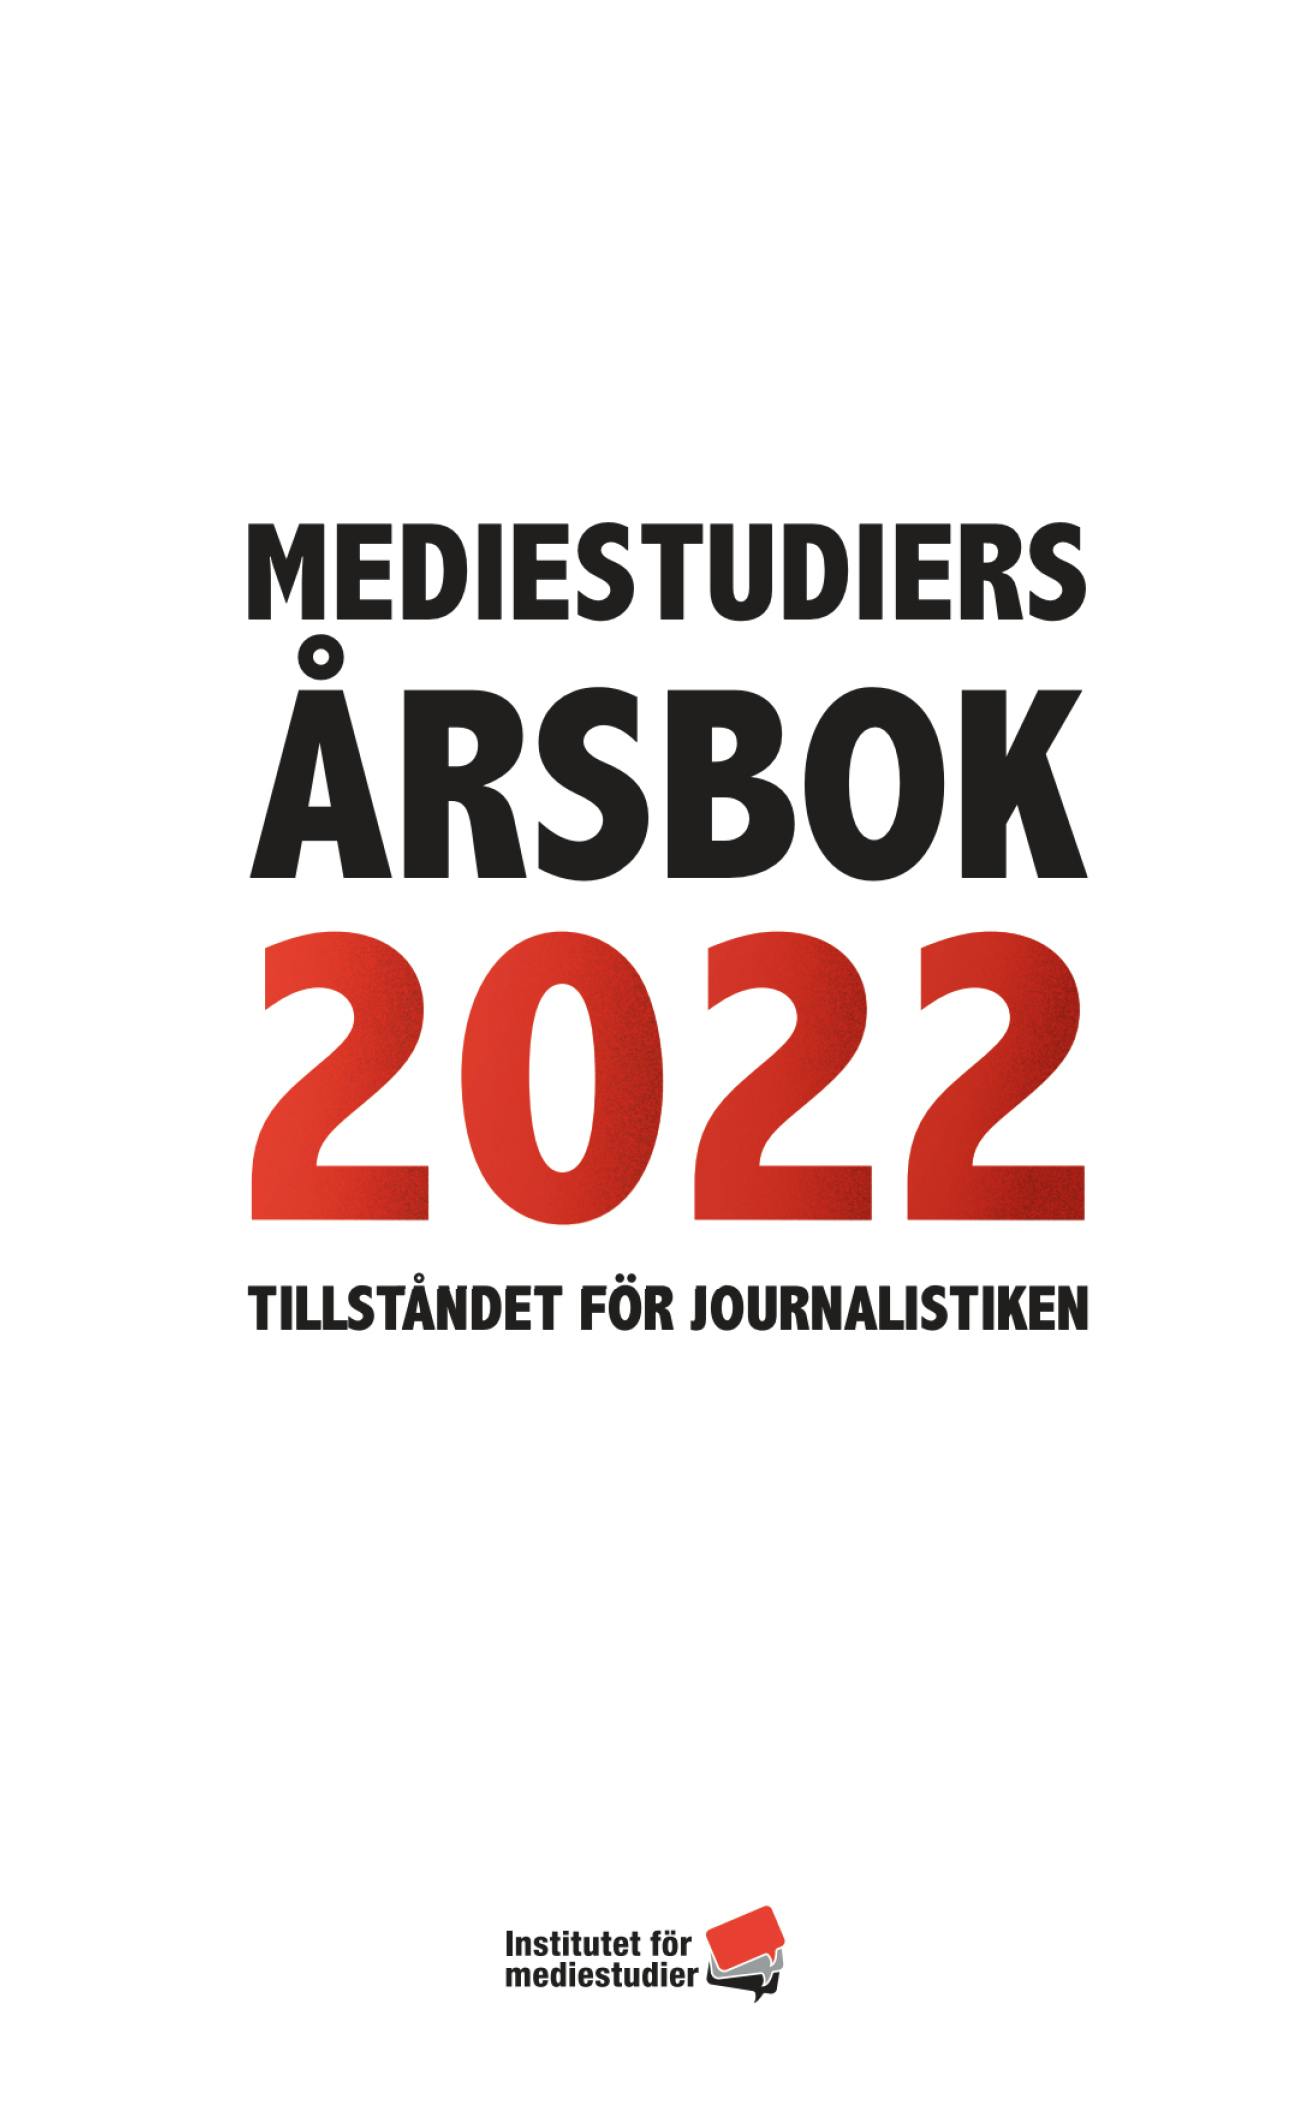 Report: Mediestudiers årsbok 2022 cover image